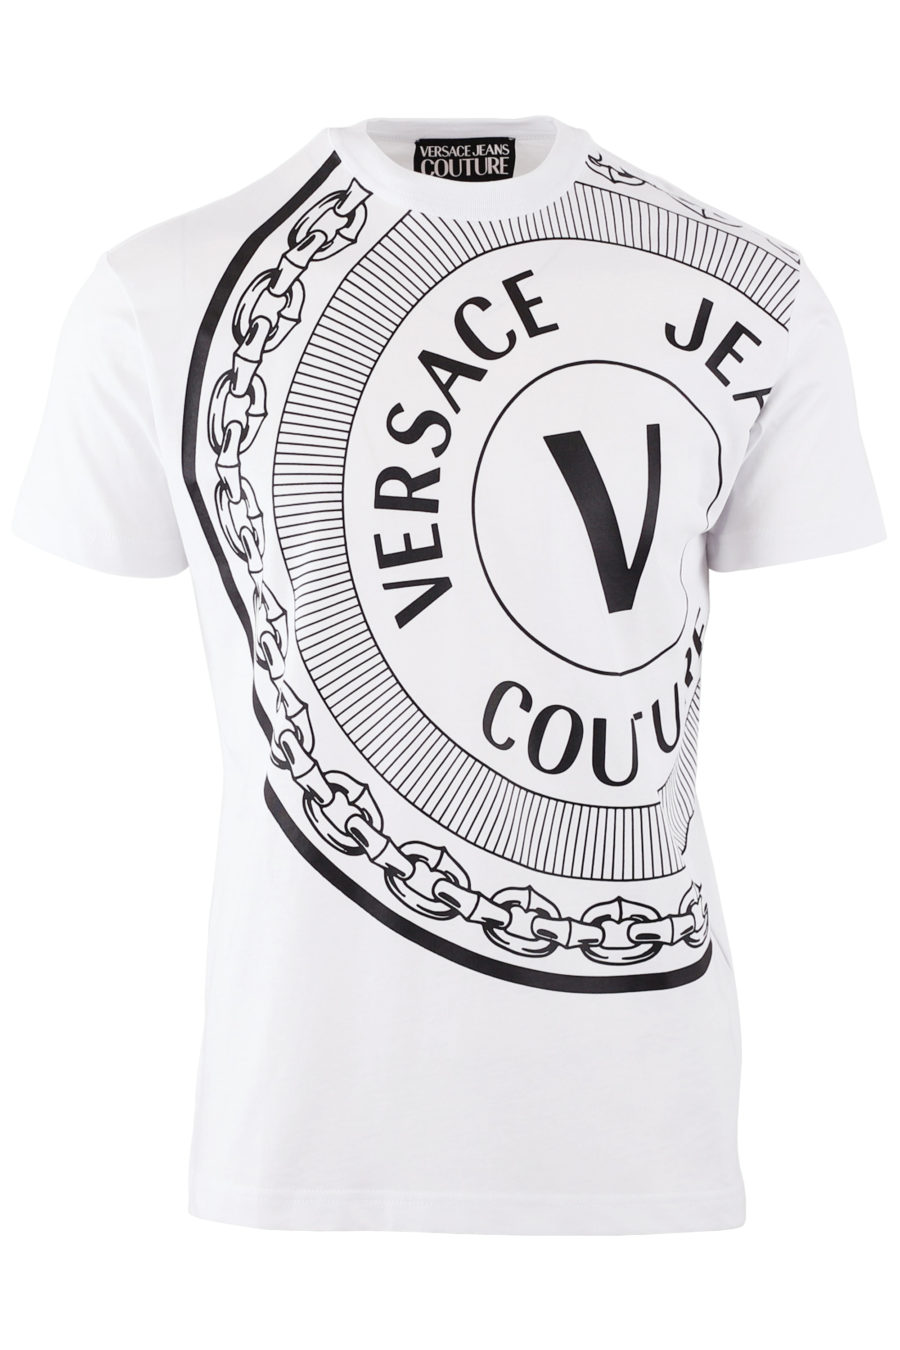 White T-shirt with large black logo - c7d09a1185d4bb53e15d24d3c1035a4452bcc366